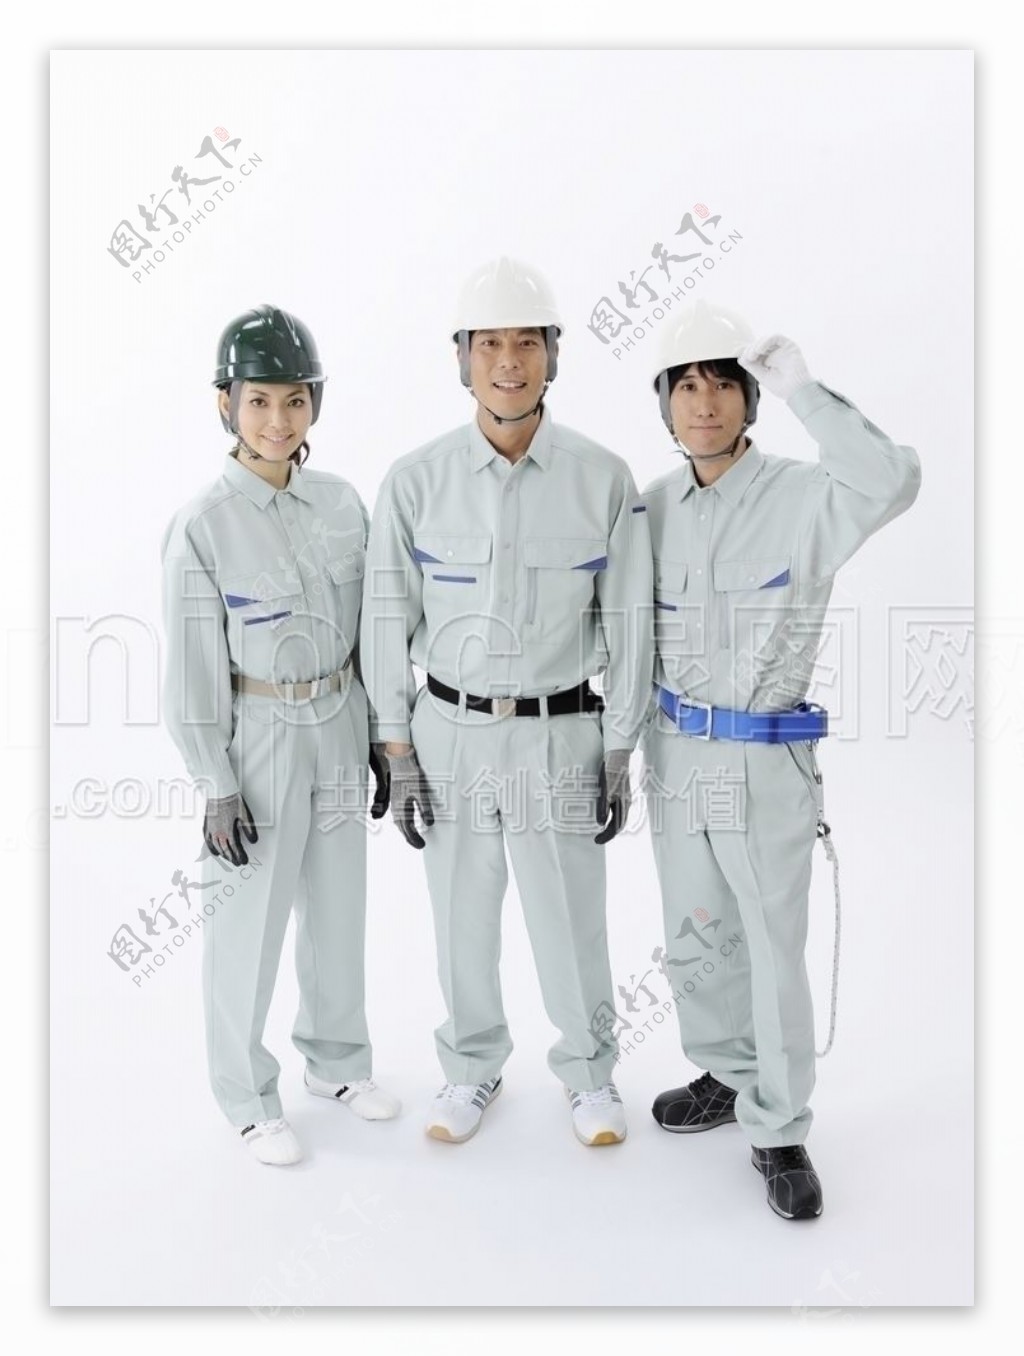 三个工人图片